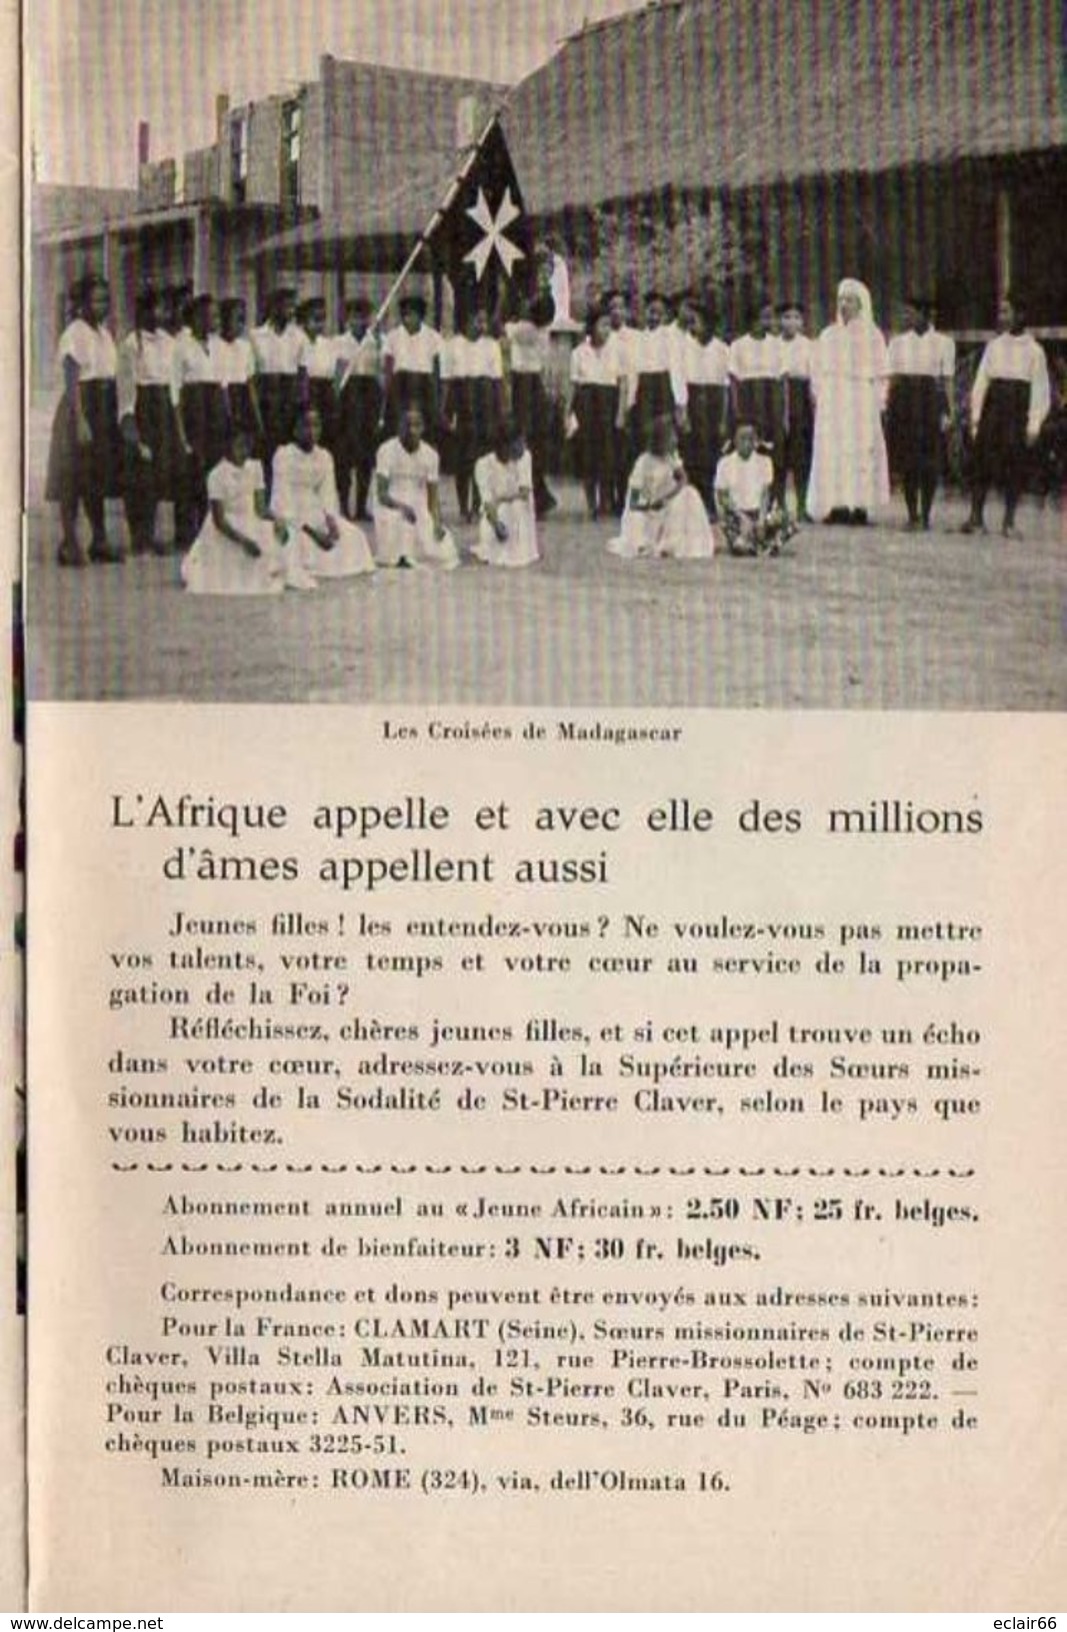 L ECHO D AFRIQUE REVUE MENSUELLE De La Solidaritéde St-PIERRE CLAVER - FASCICULE DE 19 PAGES - Outre-Mer